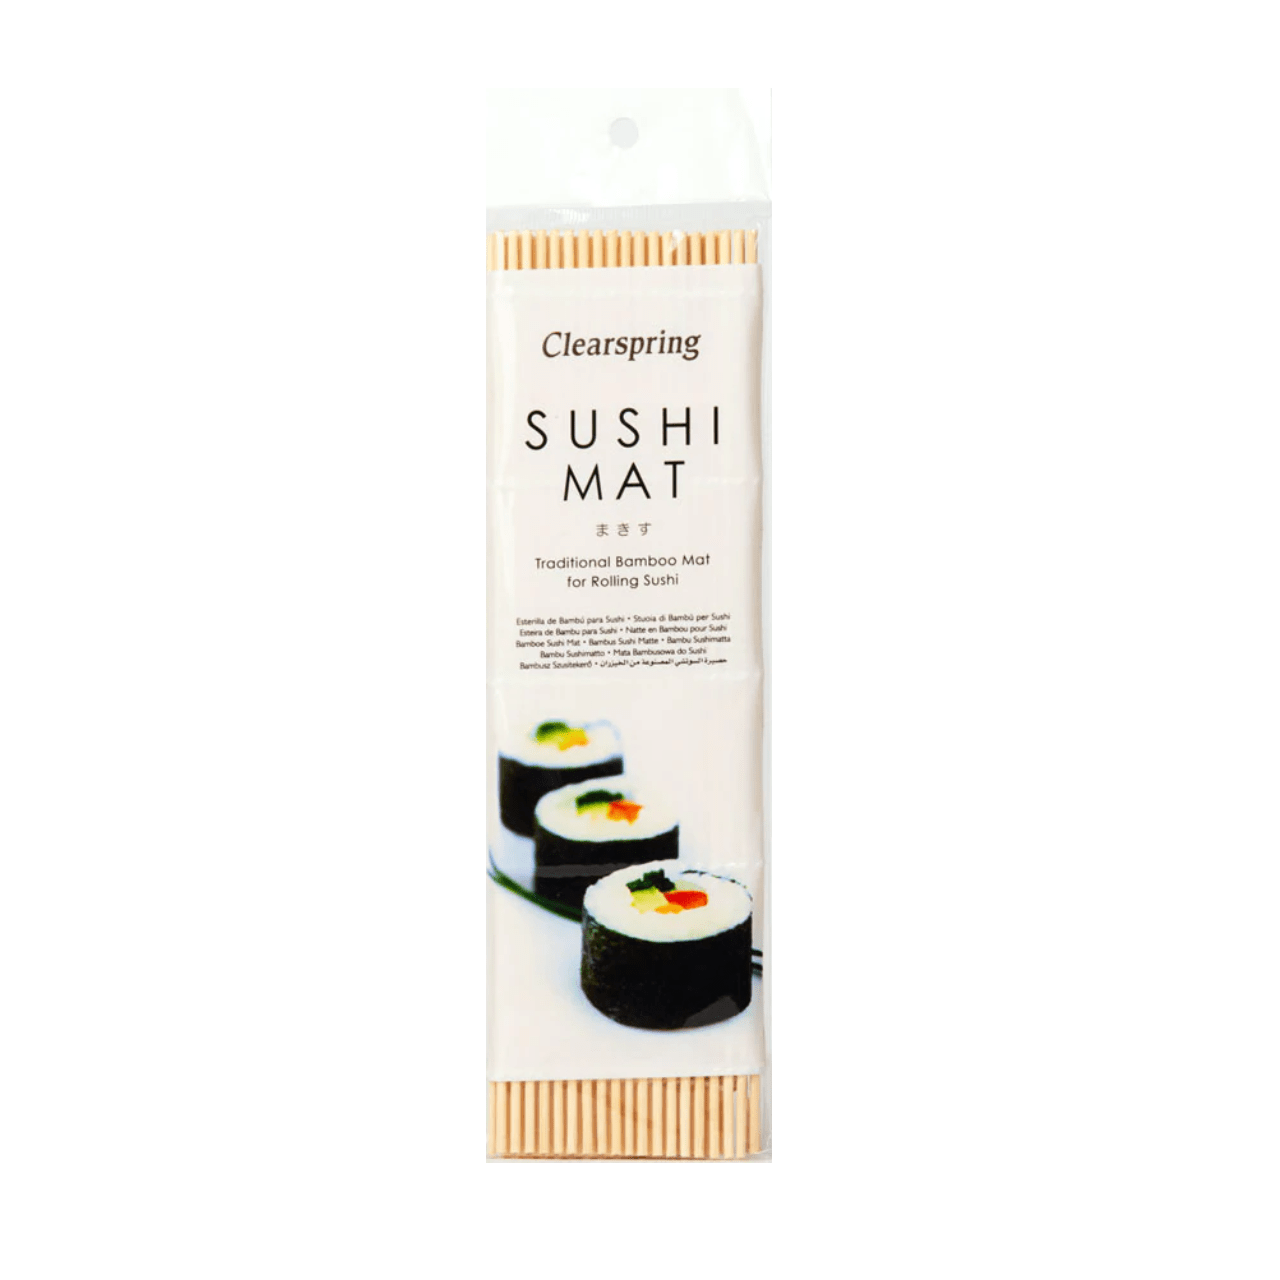 Ψαθάκι μπαμπού για σούσι